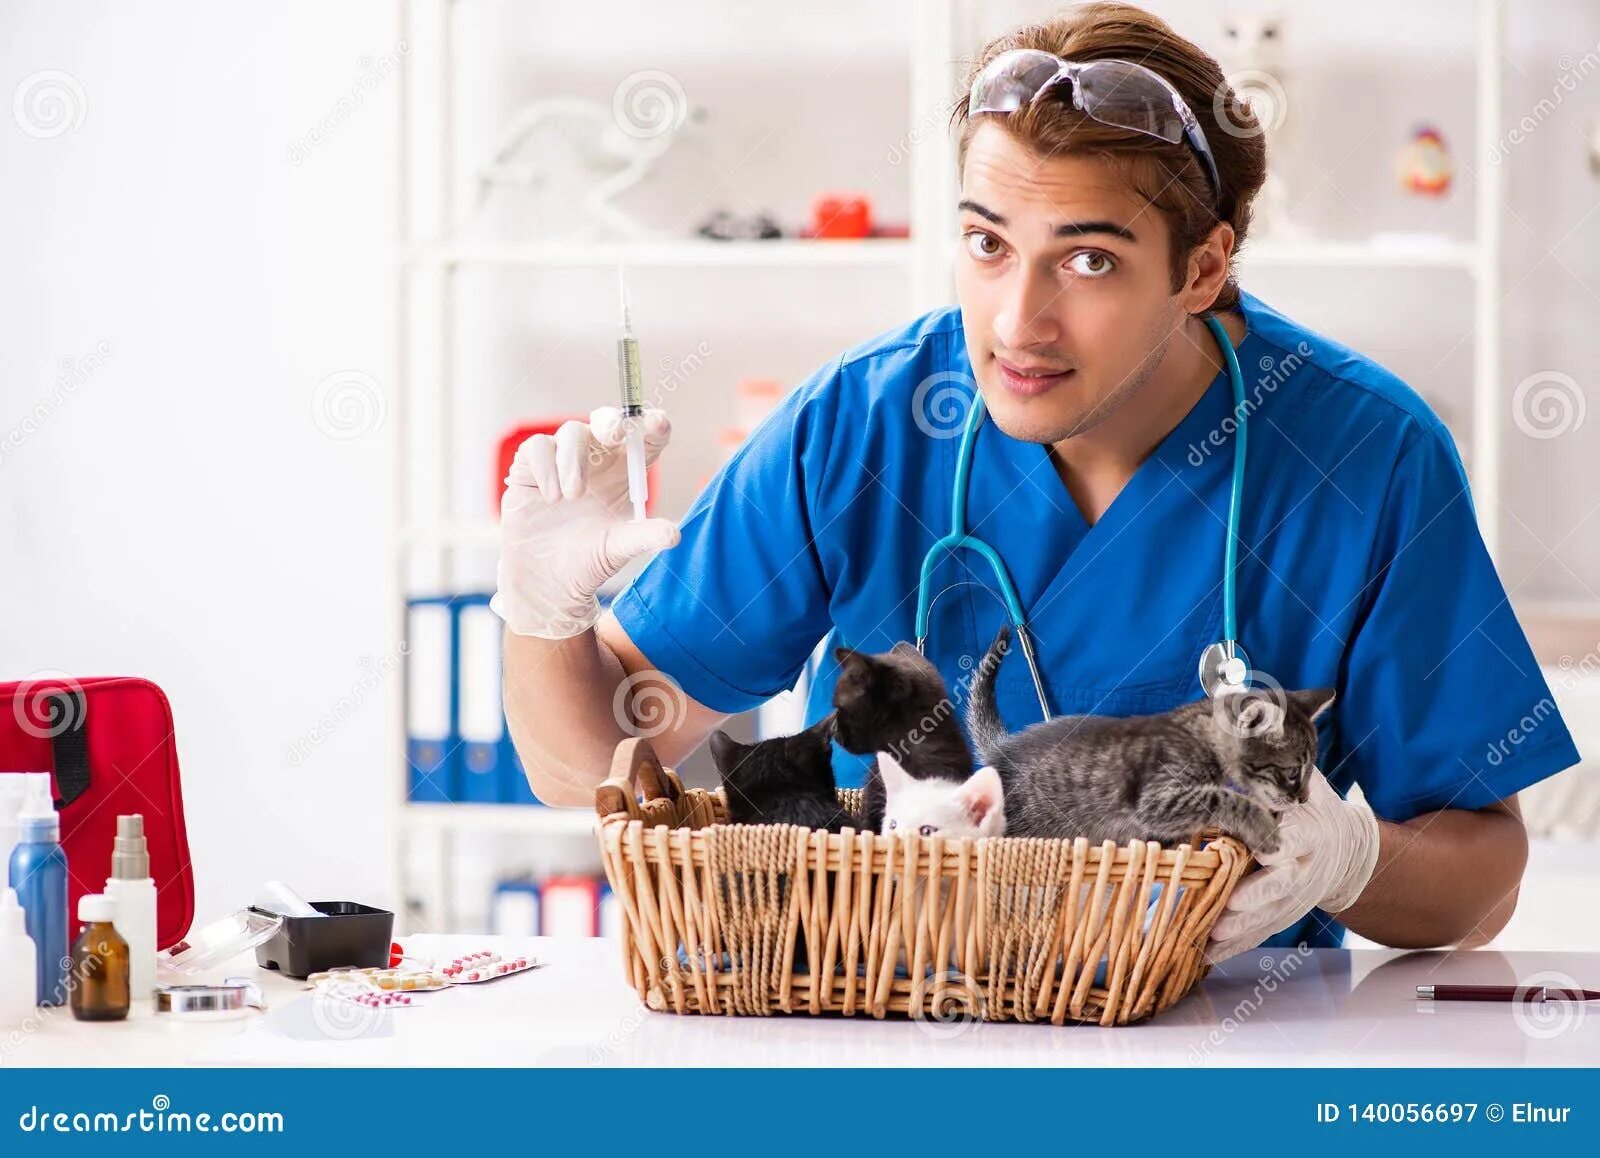 Котенок у ветеринара. Ветеринар быт. Молодые мужчины ветеринары. Мужчина врач с кошечкой. Ветеринар рецепты